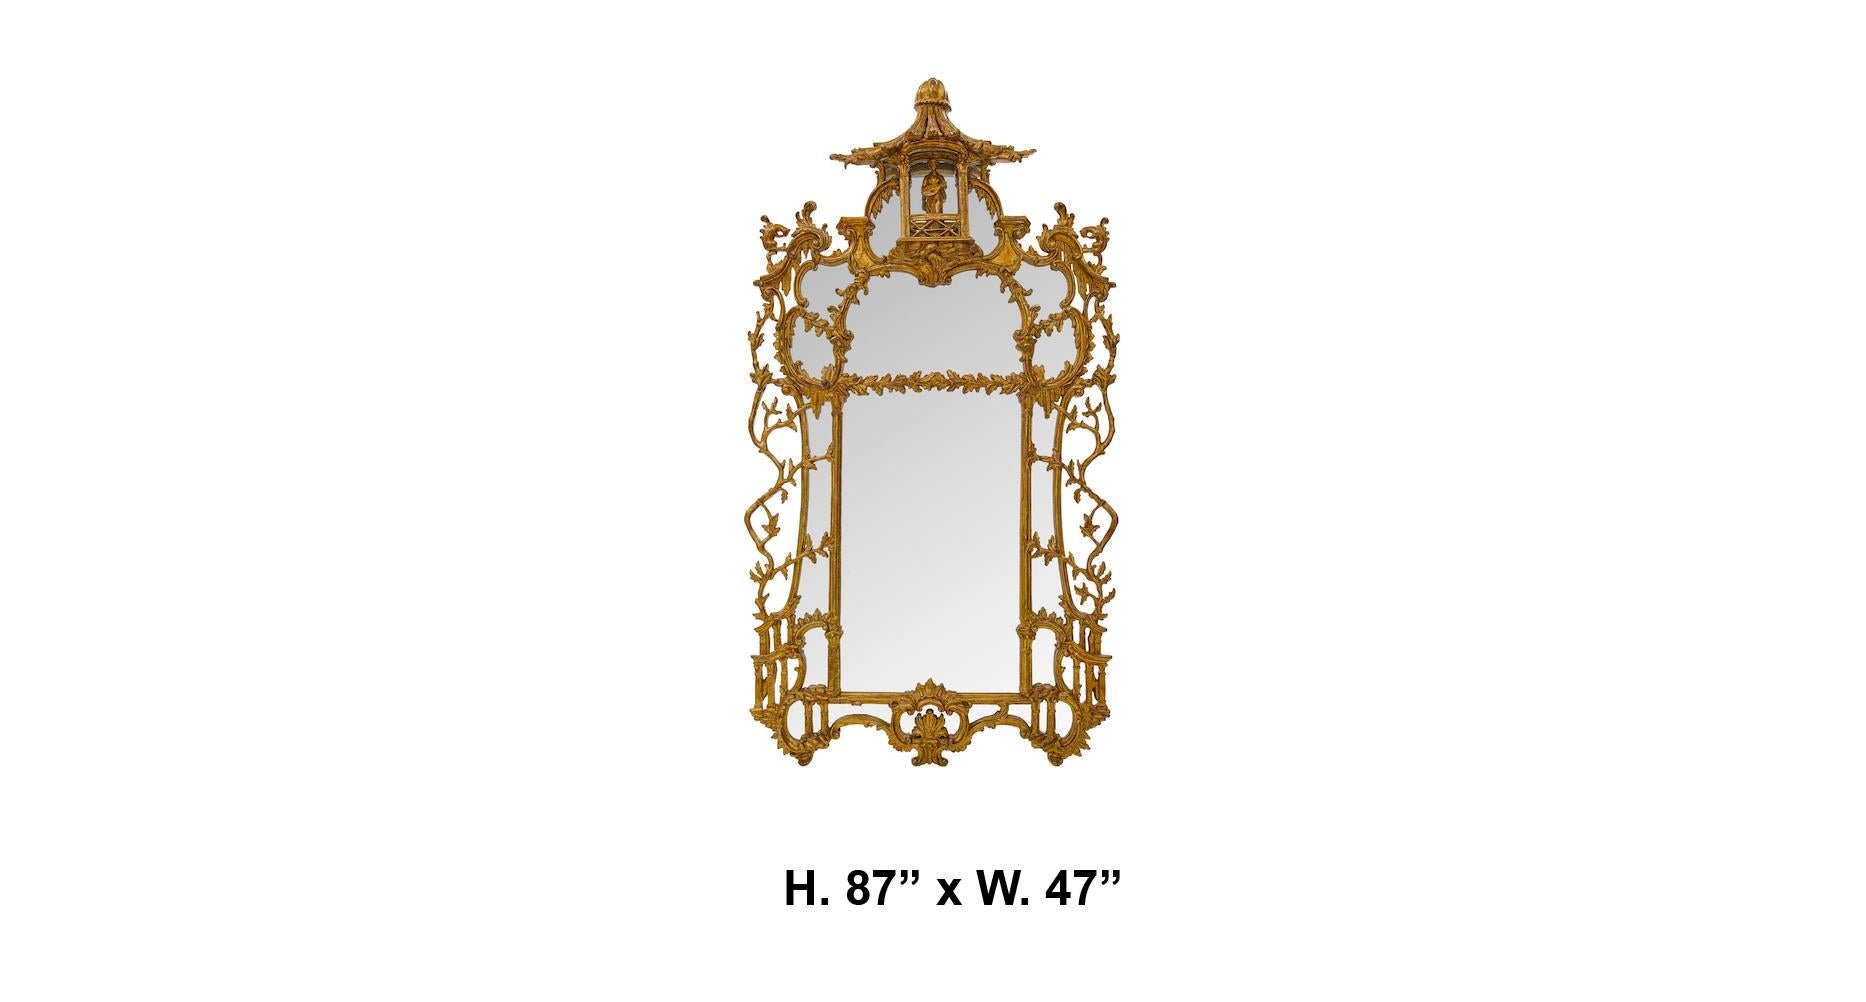 Außergewöhnlicher Spiegel aus geschnitztem Goldholz im Chippendale-Stil des 19. Jahrhunderts. Das Werk wird von einem kunstvoll geschnitzten Balkon gekrönt, auf dem ein kleiner vergoldeter Musiker mit Musikinstrument über einem Spiegel steht, der